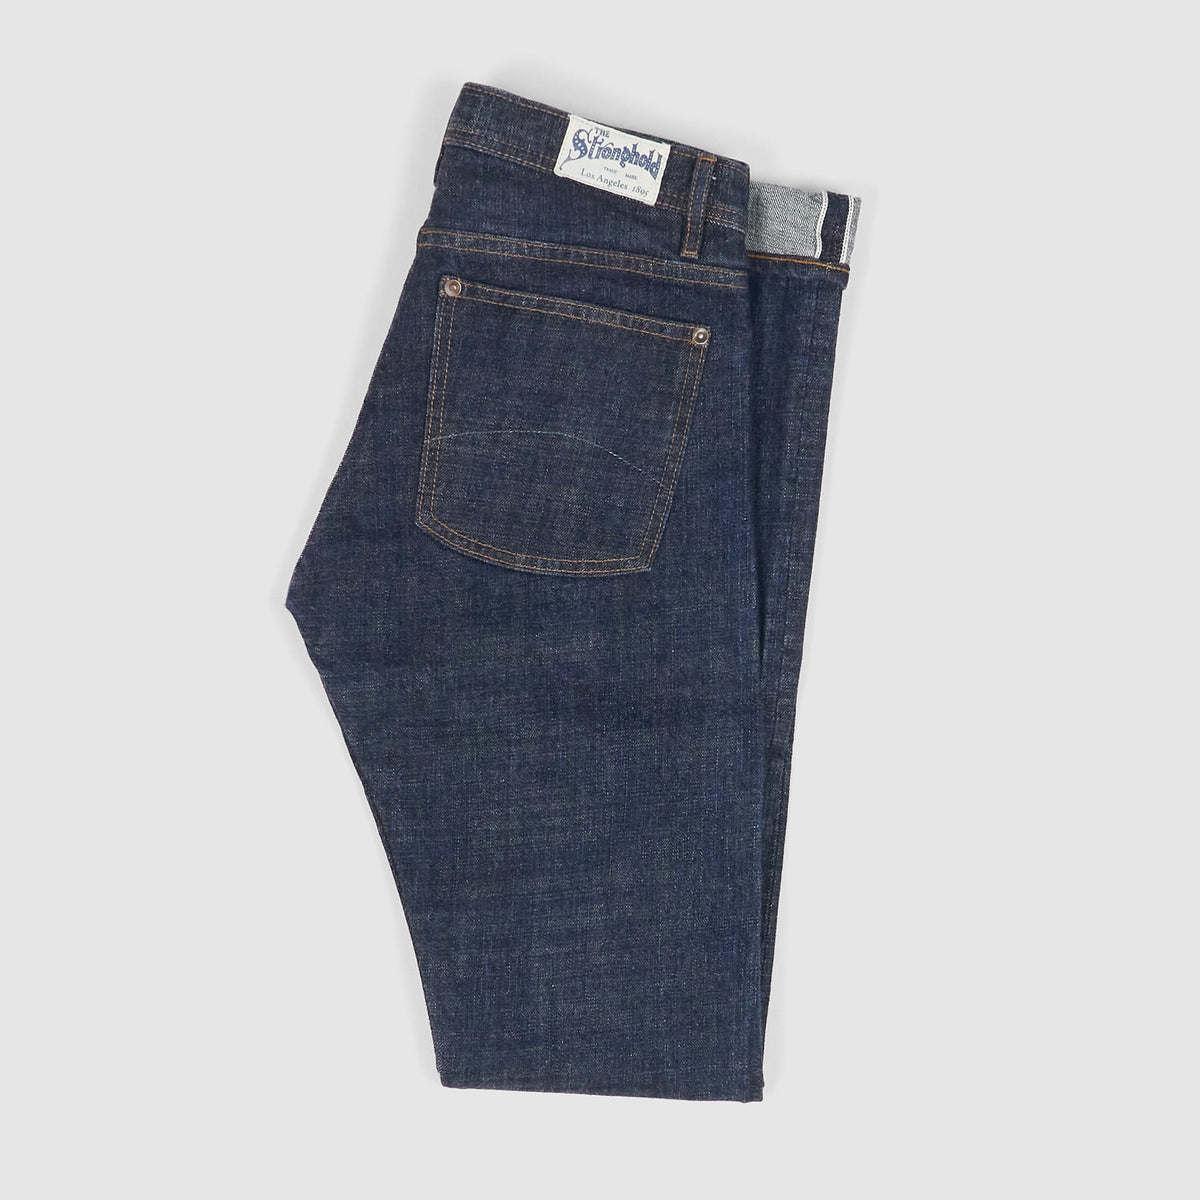 Stronghold 12.5oz. 5-Pocket Denim Jeans